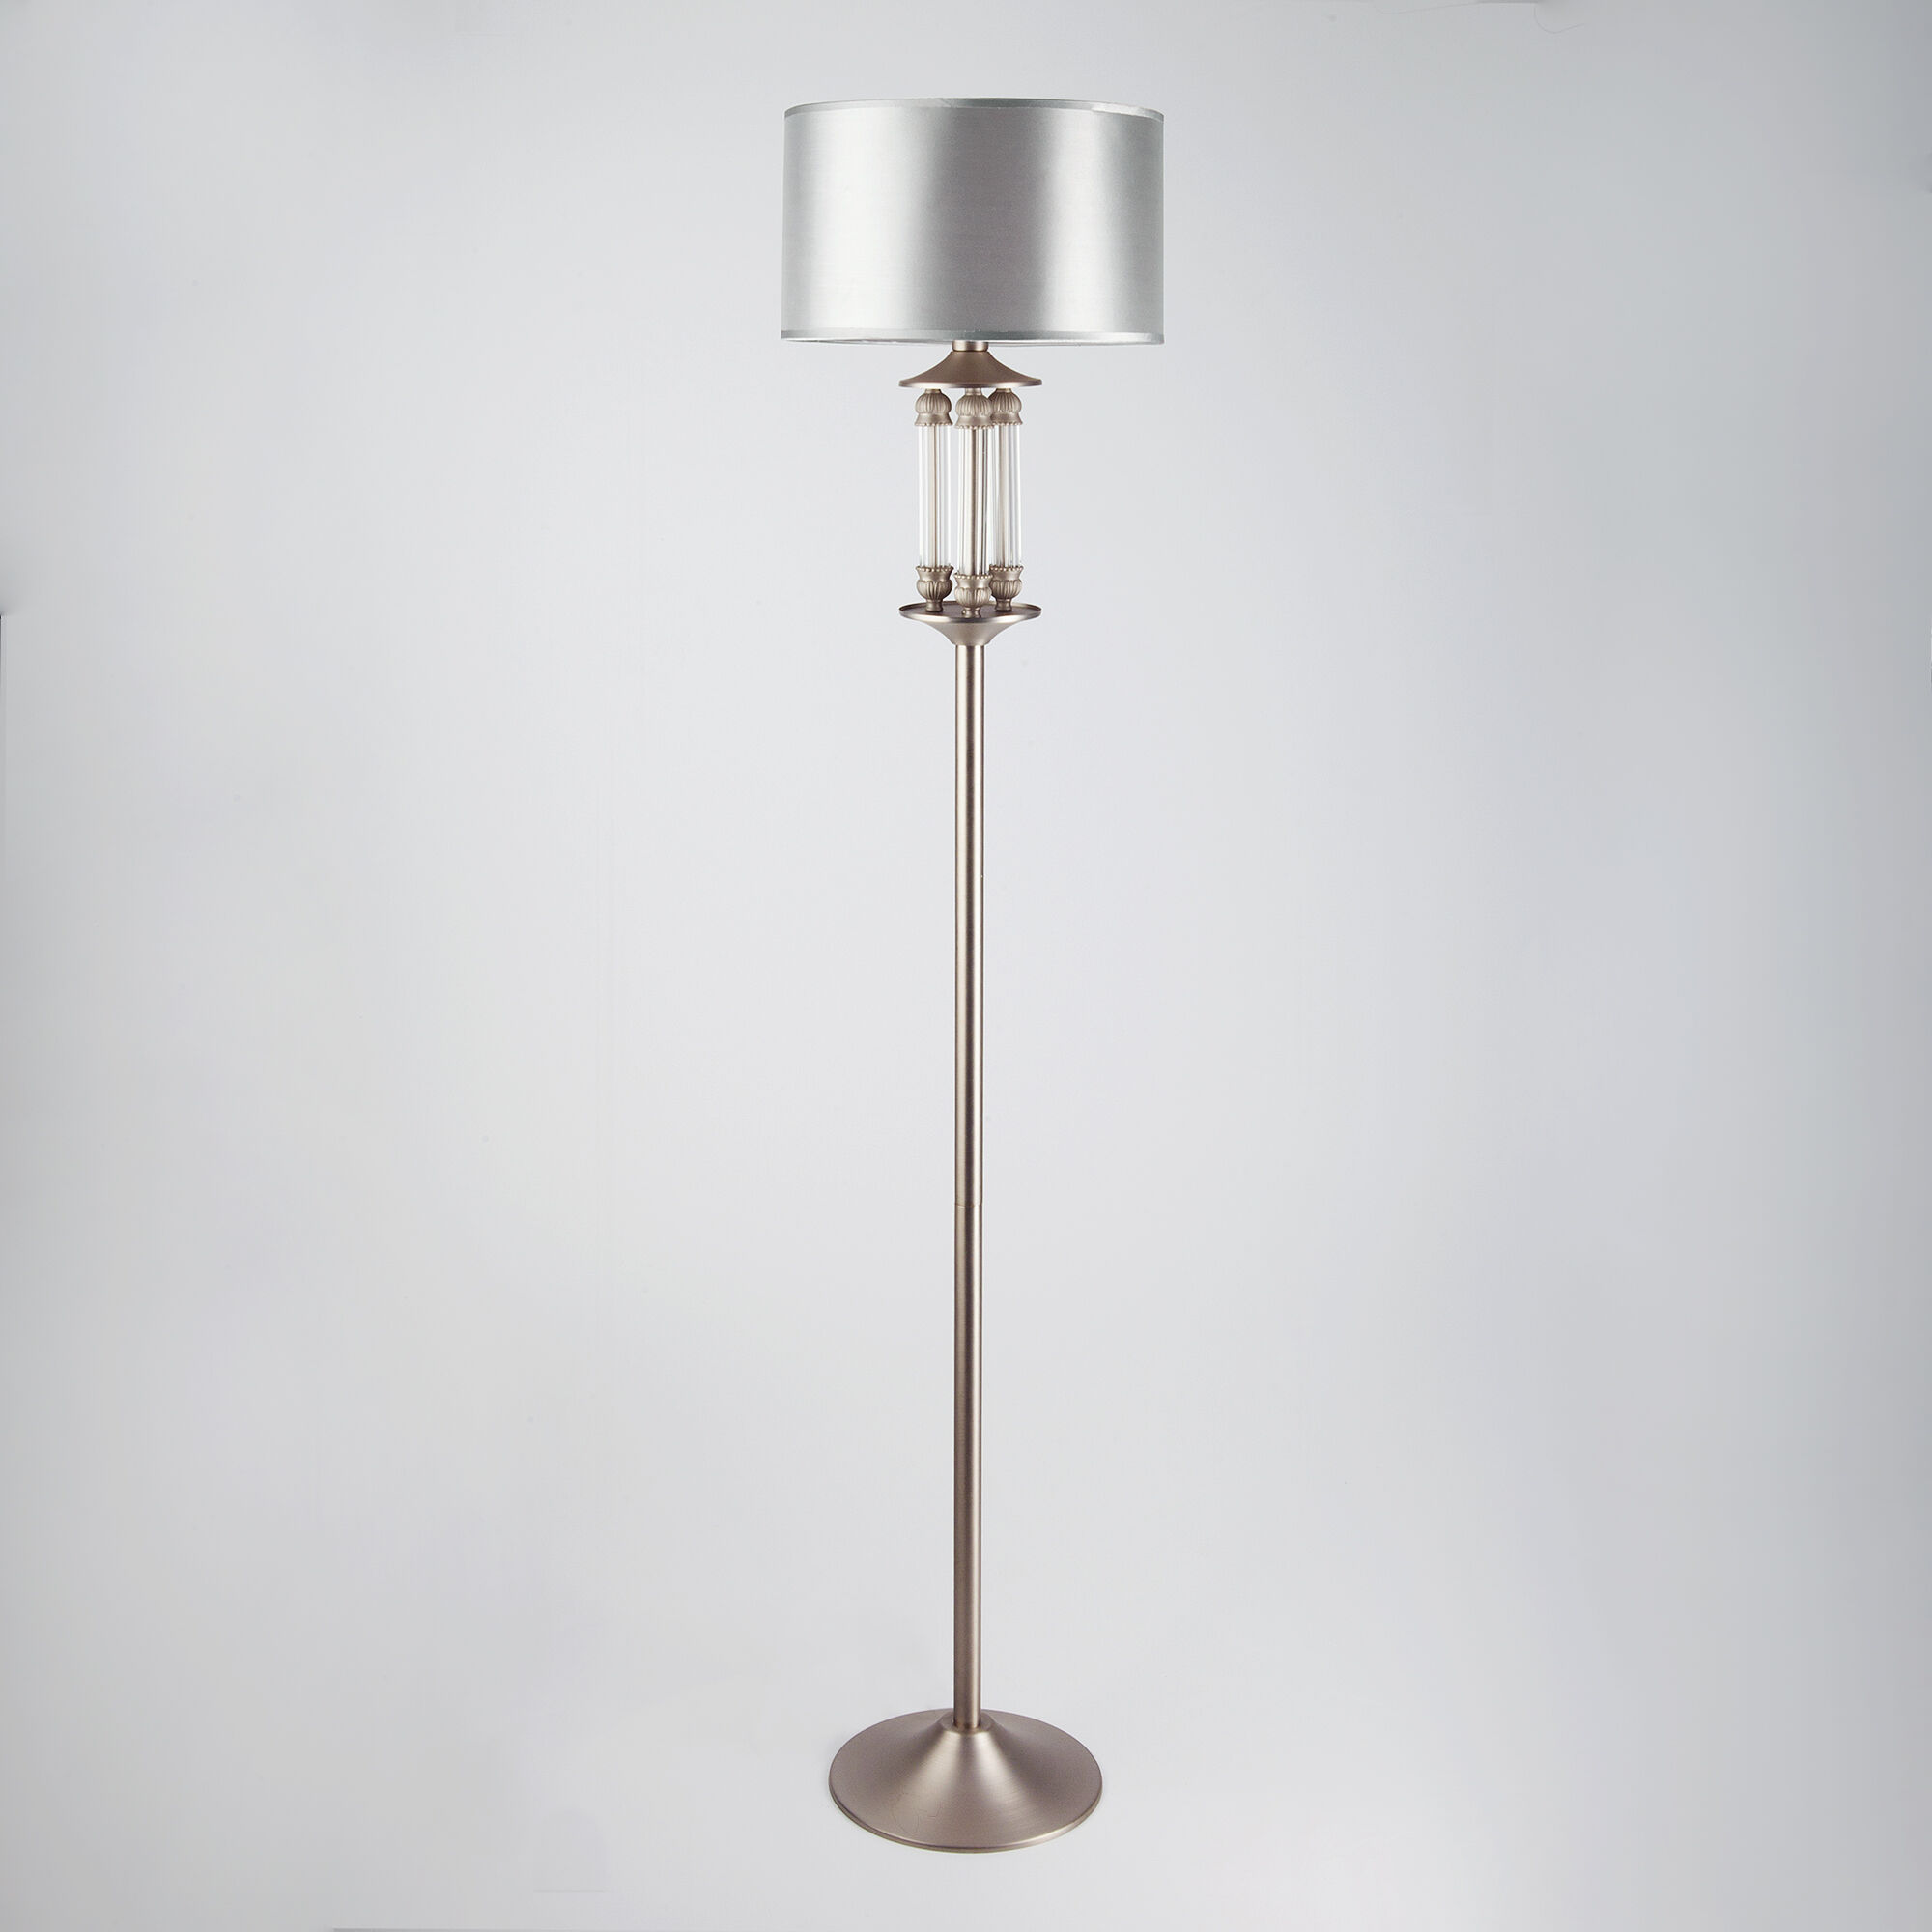 Напольный светильник с тканевым абажуром Eurosvet Adagio 01046/1 сатин-никель. Фото 1